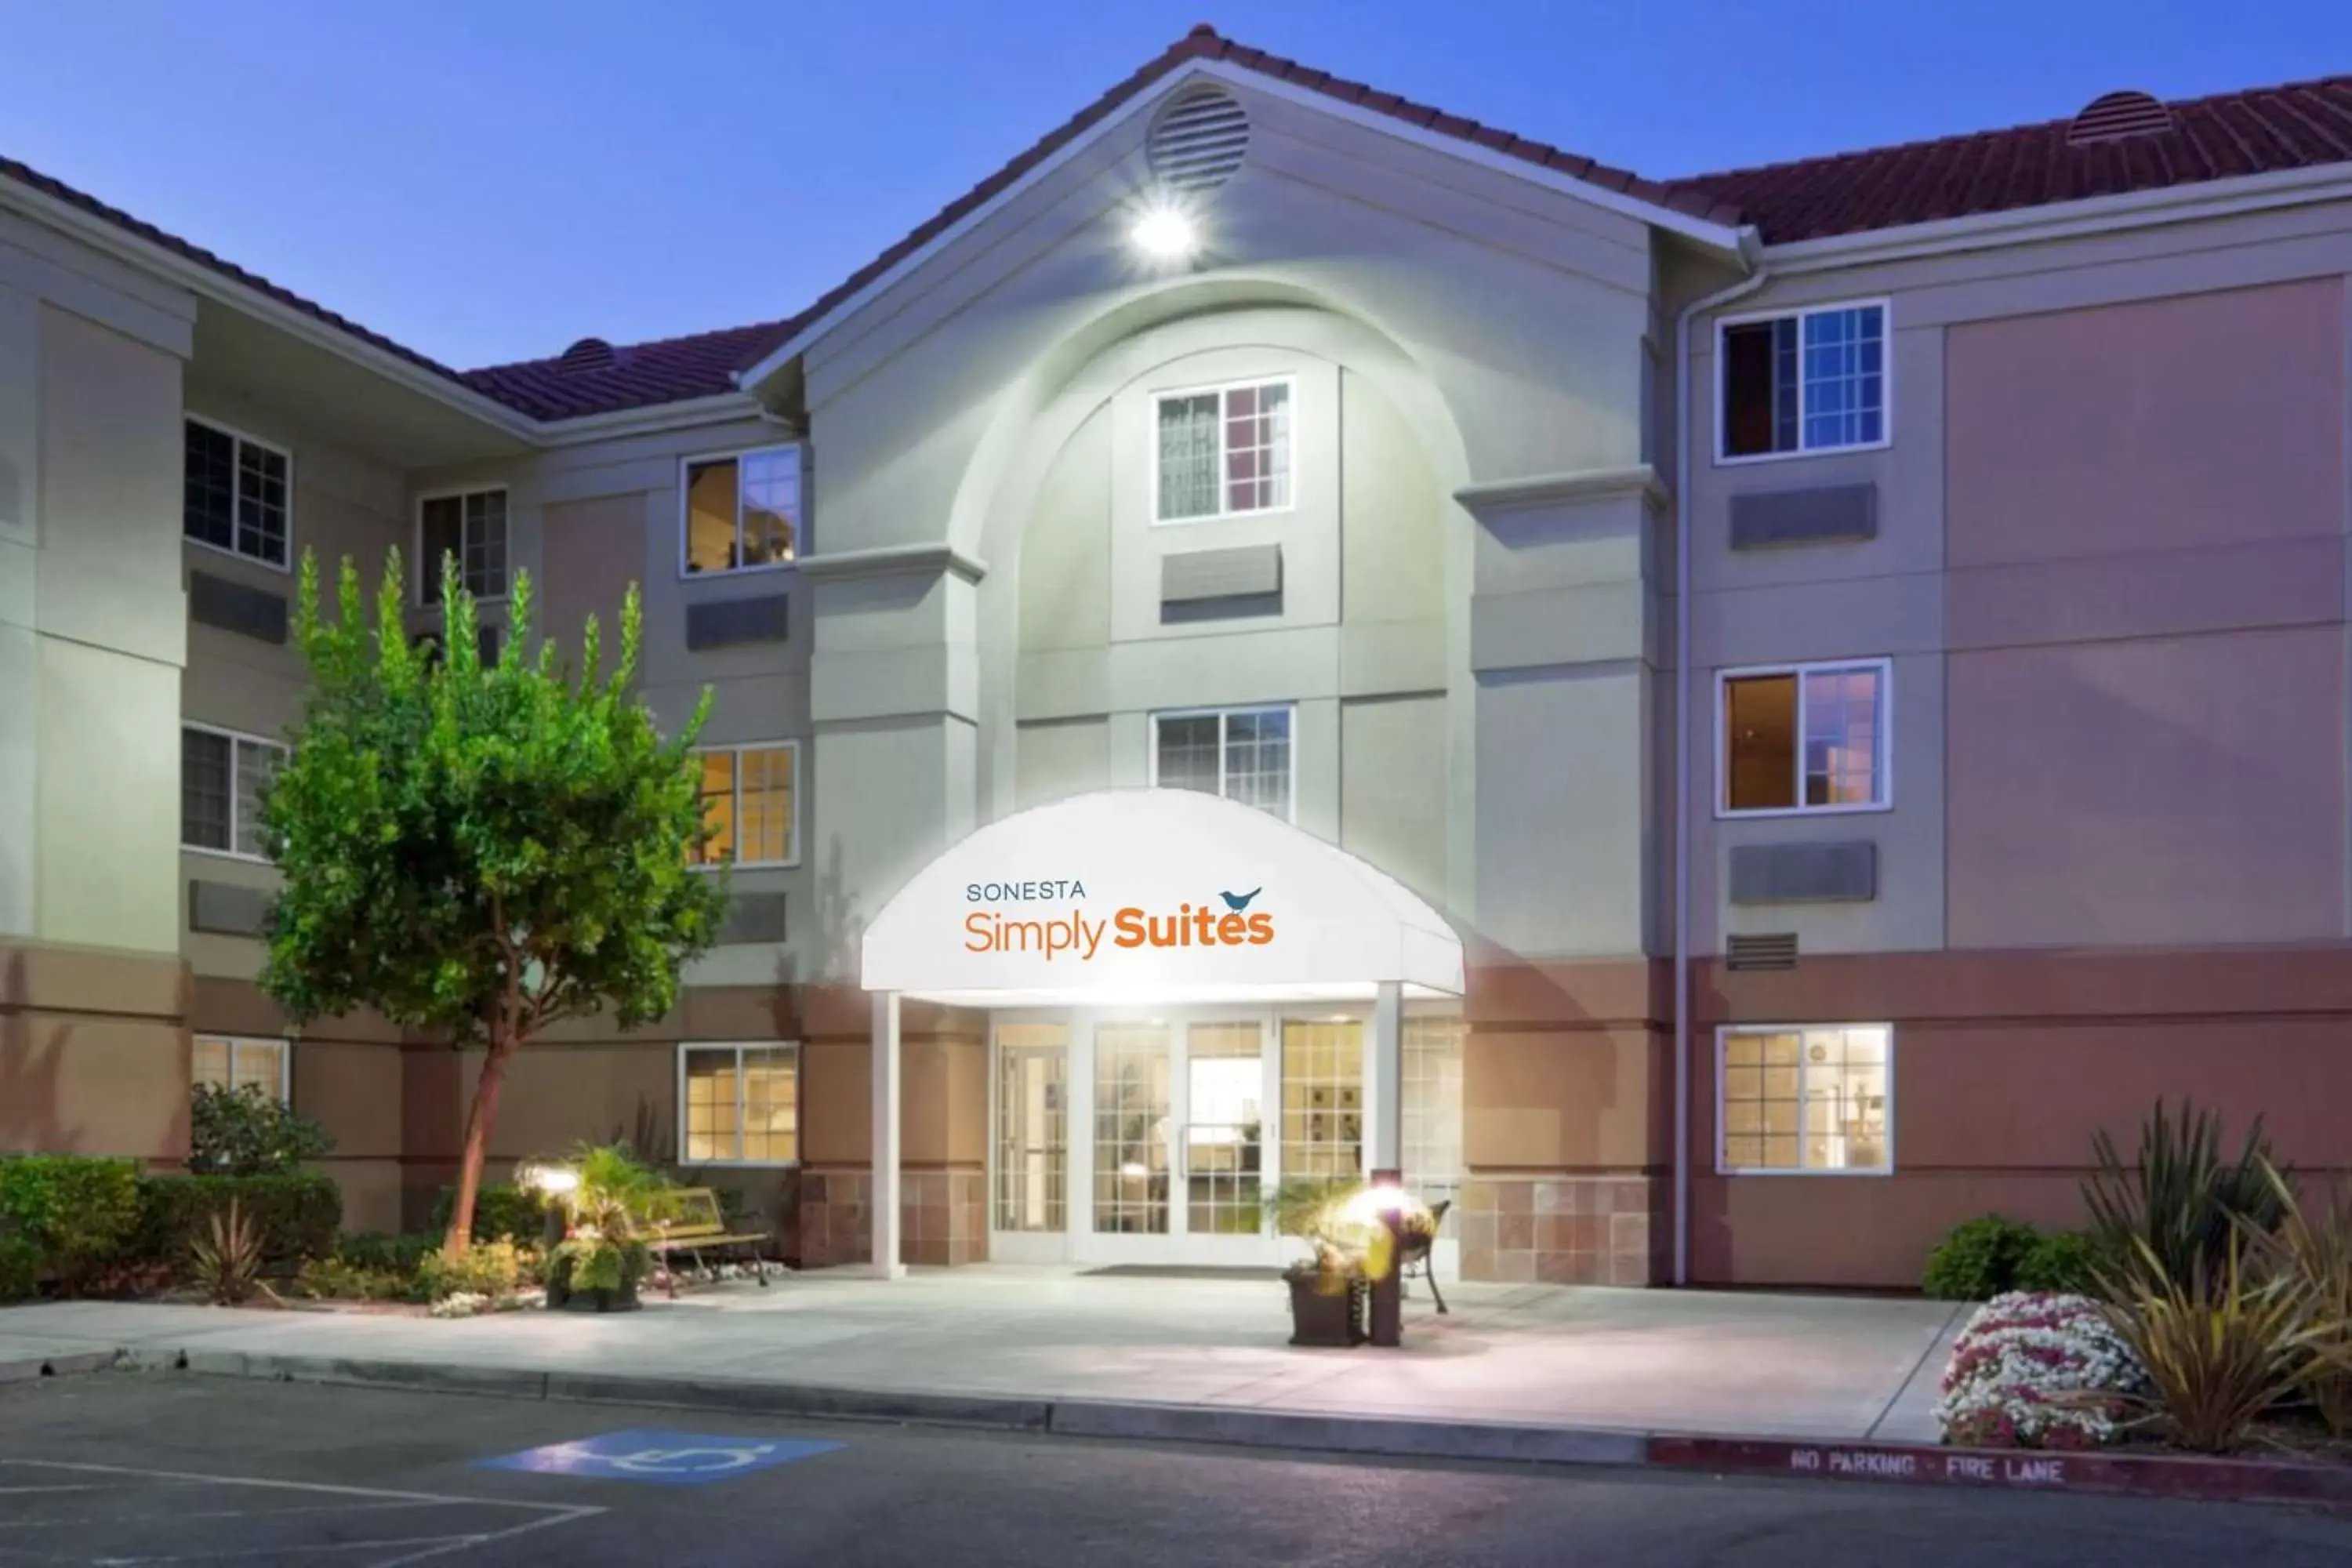 Property Building in Sonesta Simply Suites Silicon Valley Santa Clara